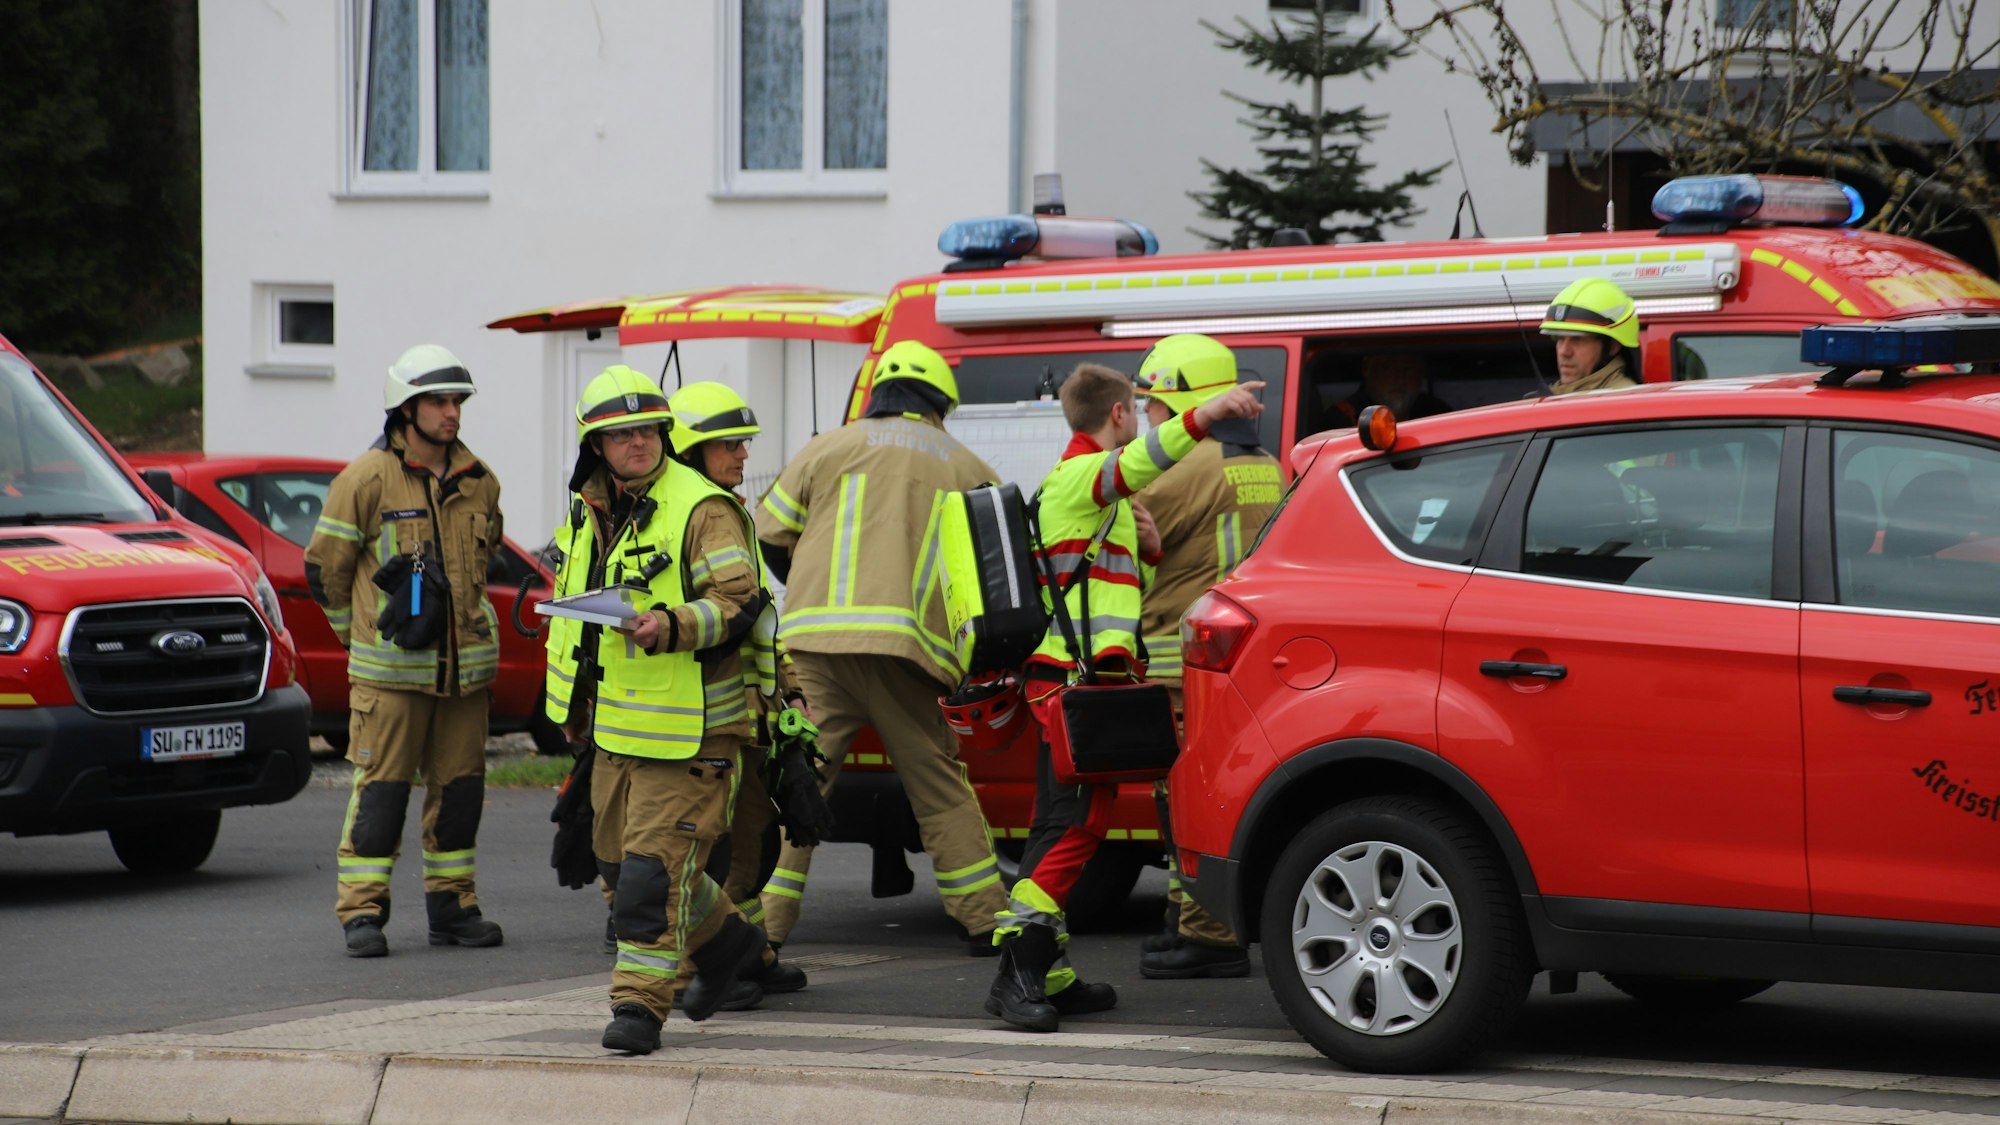 Die Belastungen für die hauptamtlichen Feuerwehrleute, wie hier bei einem Einsatz in Siegburg, sind hoch.